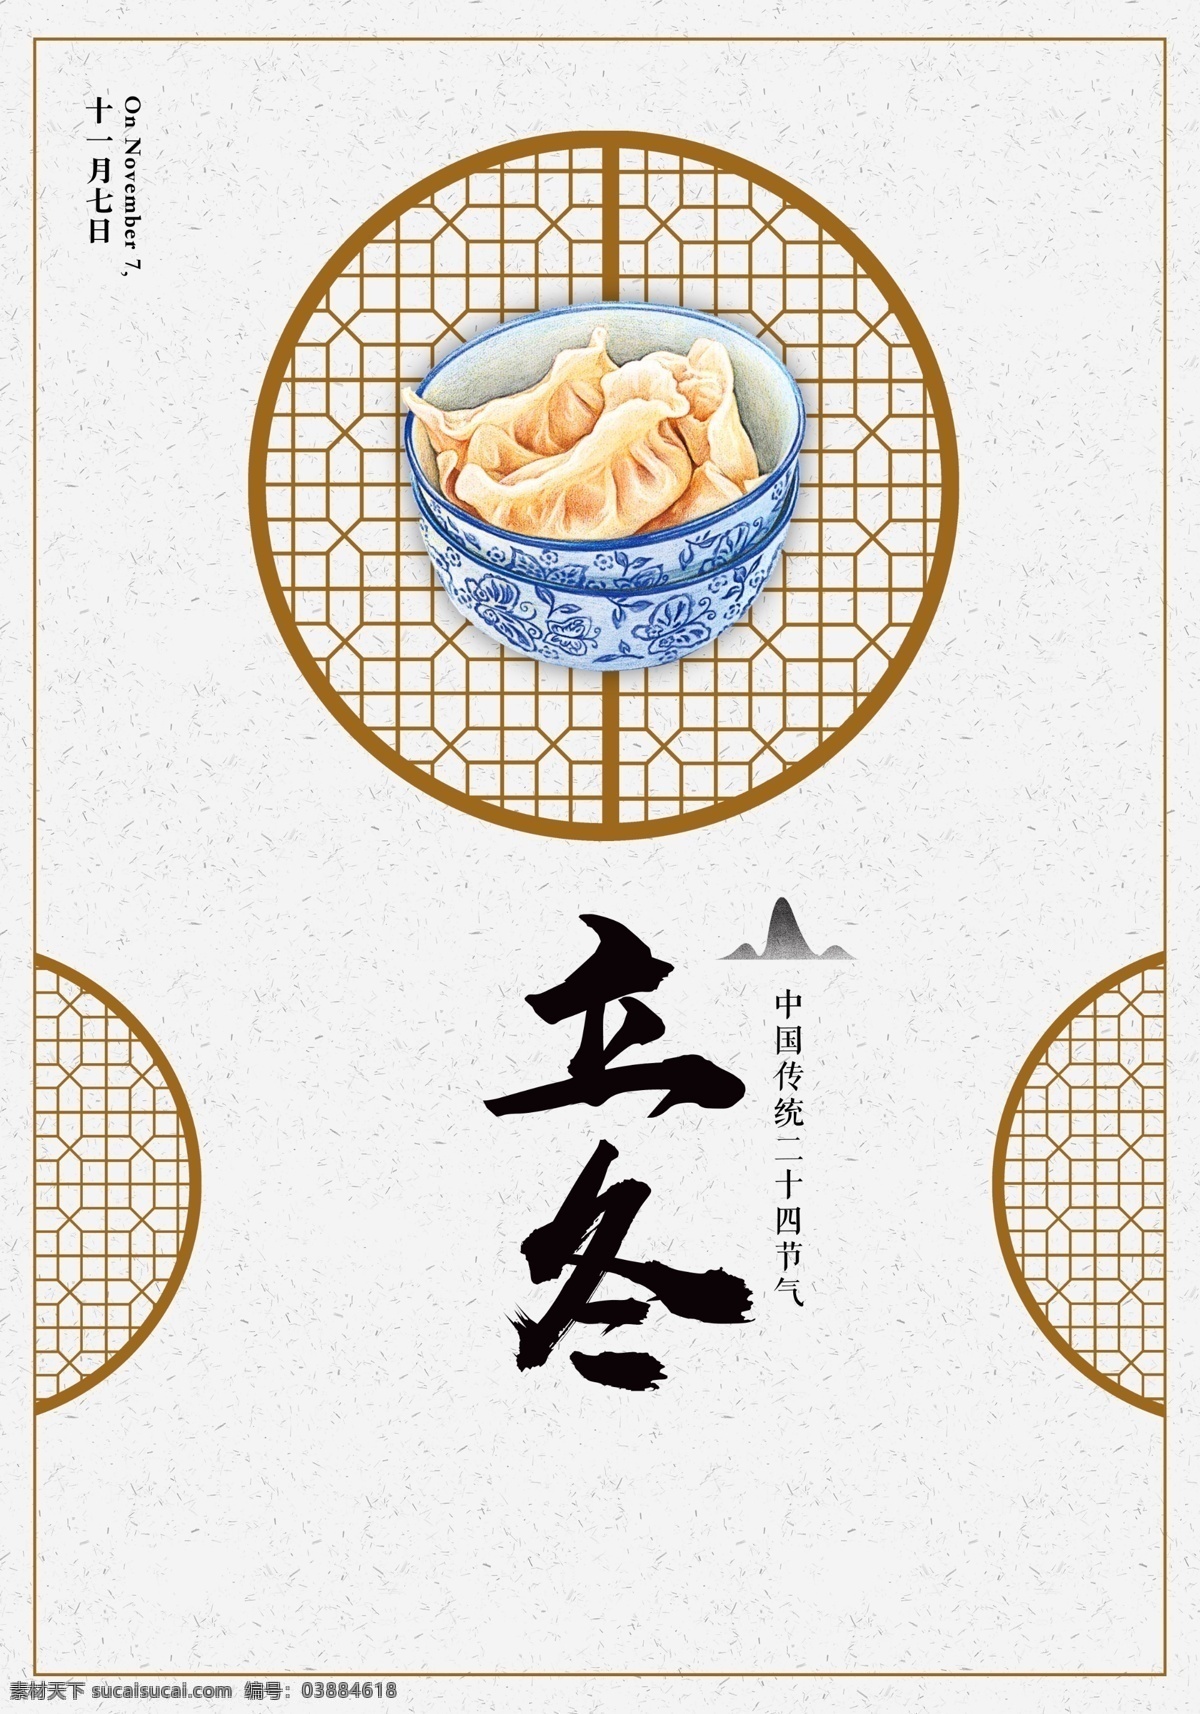 二十四节气 立冬 海报 饺子 窗格 简洁